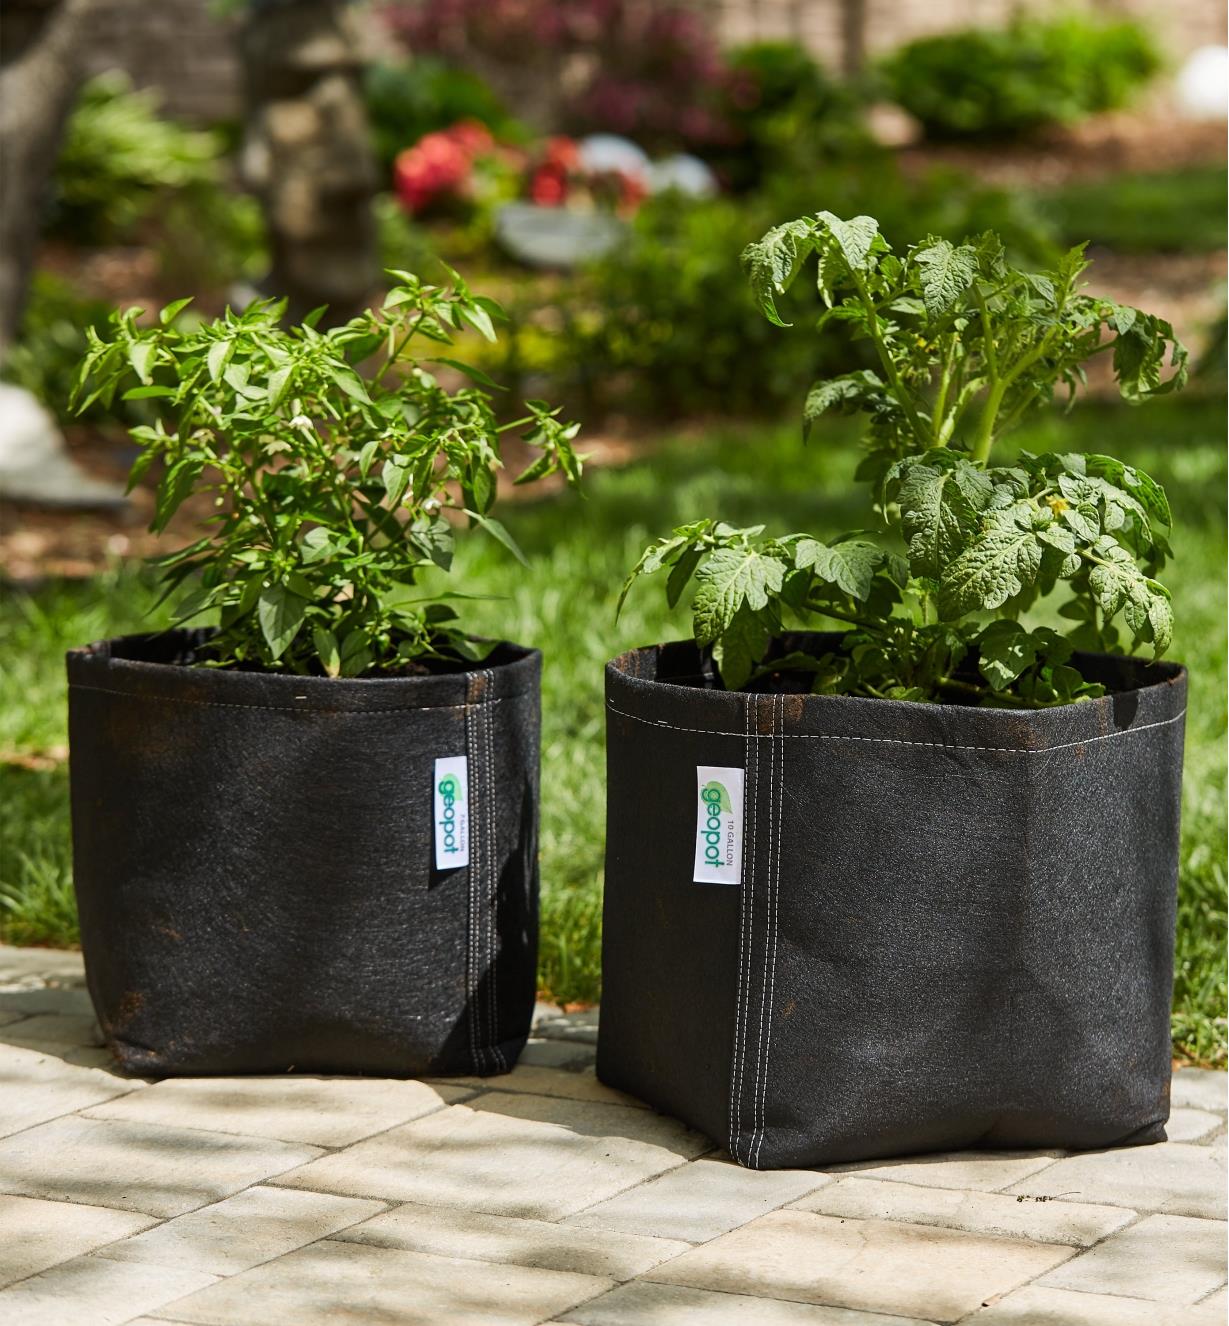 Deux pots en tissu sans poignées contenant chacun un plant de tomate posés sur une terrasse